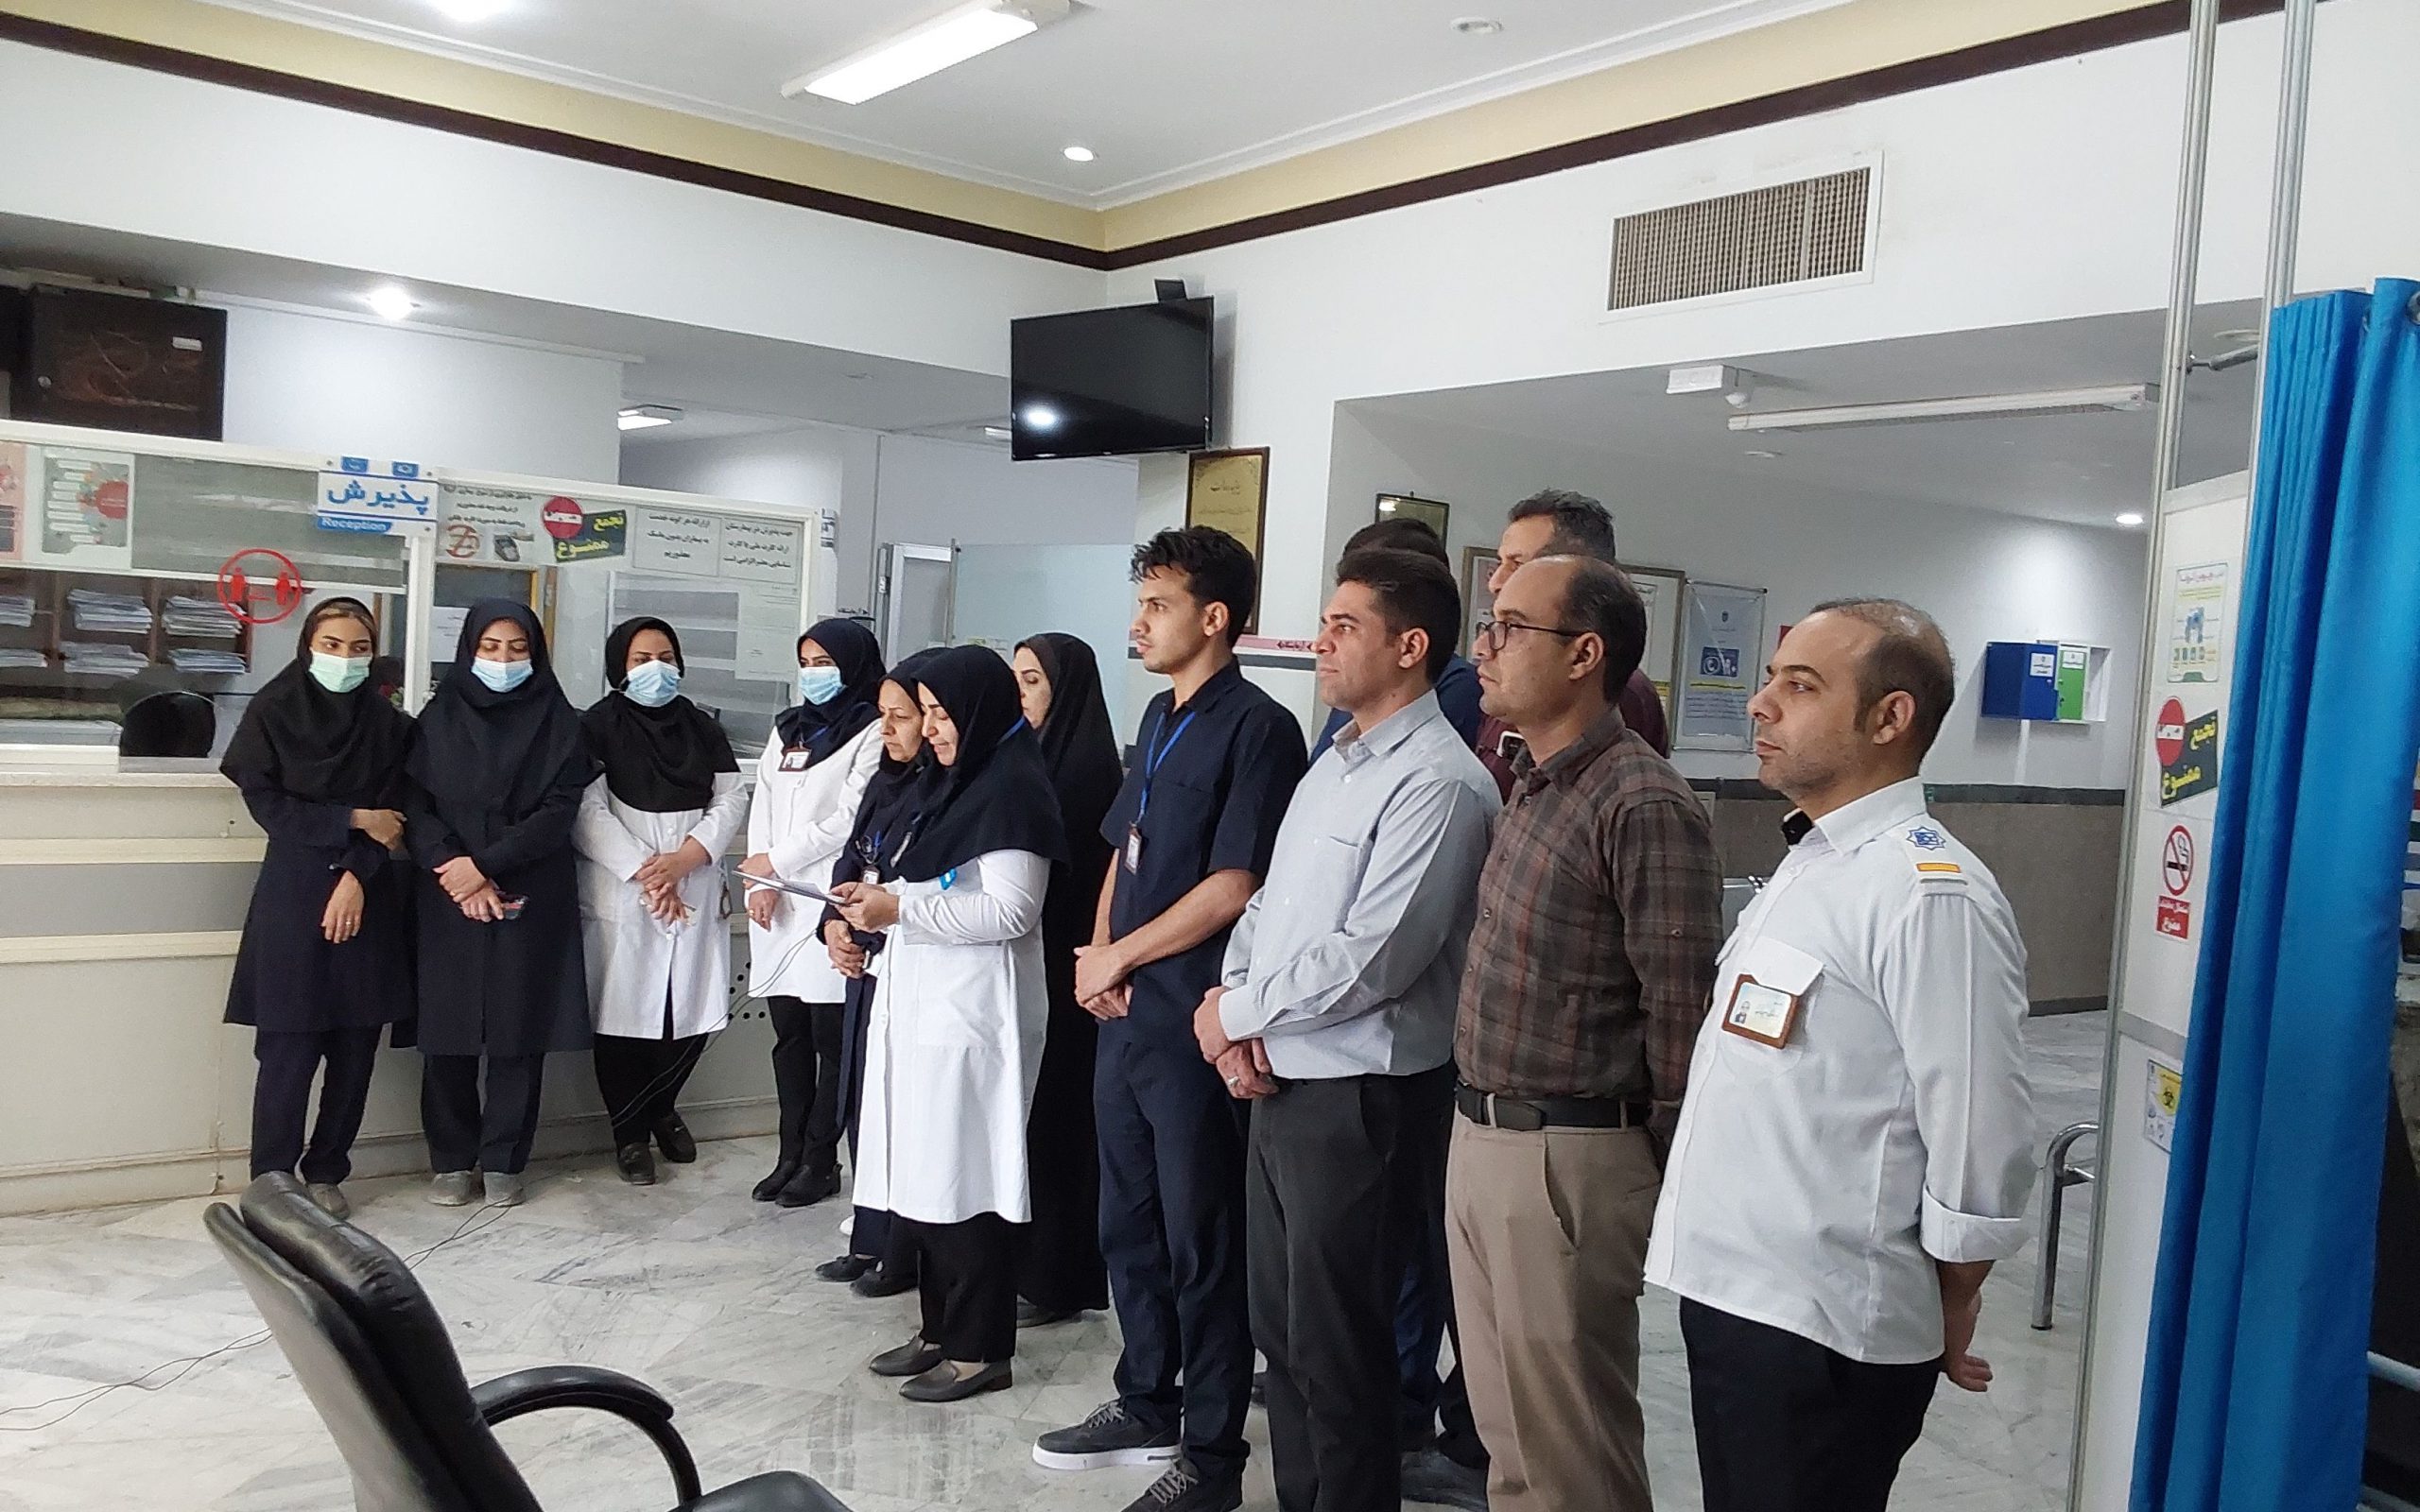 اعلام همدردی کادر درمان شهرستان راور از مردم مظلوم فلسطین